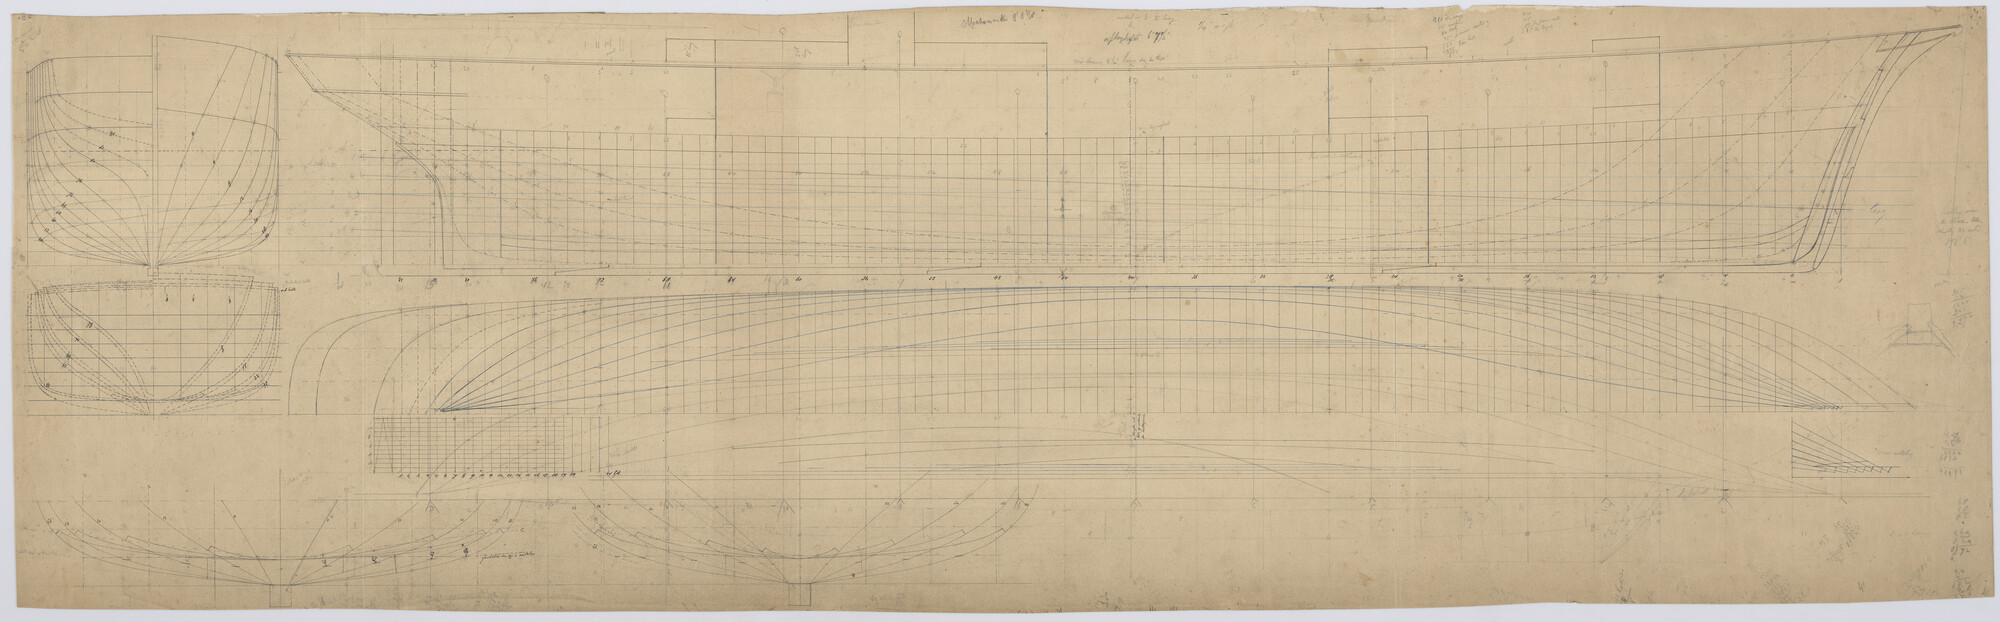 S.0027(044); Lijnenplan van de schroefstoomschepen 'Ruys', 'Tegelberg' en 'Camphuys'; technische tekening